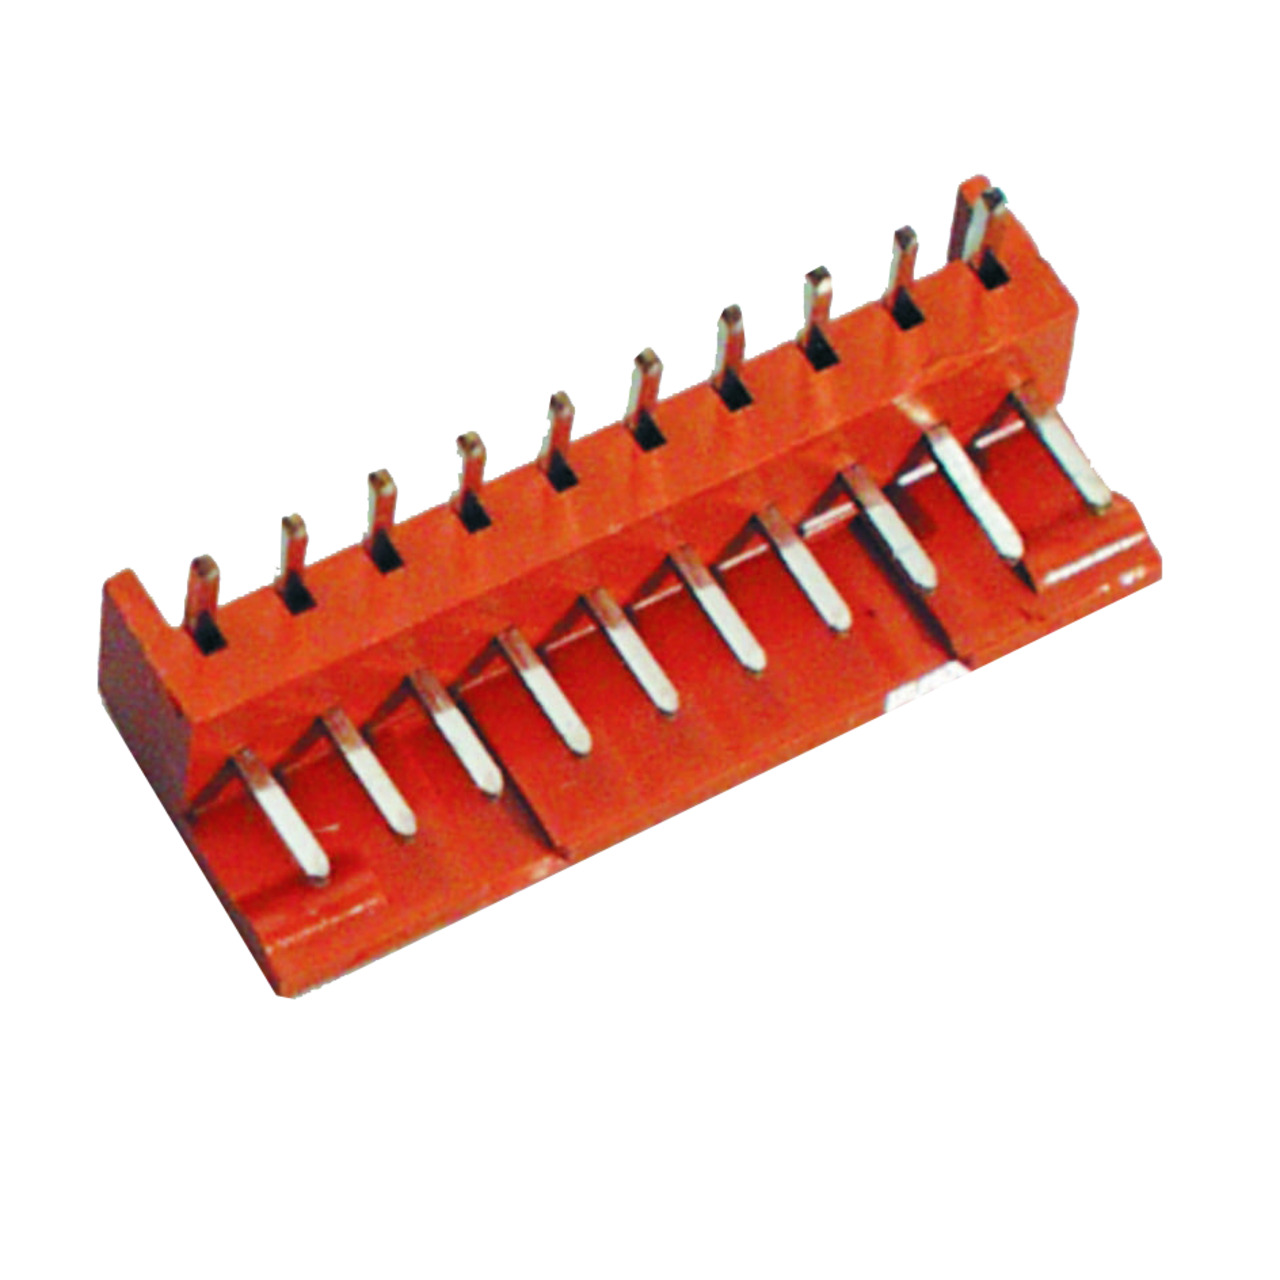 BKL Electronic Platinen-Steckverbinder Unterteil- 3 polig- gewinkelt- Raster 2-5 mm unter Komponenten